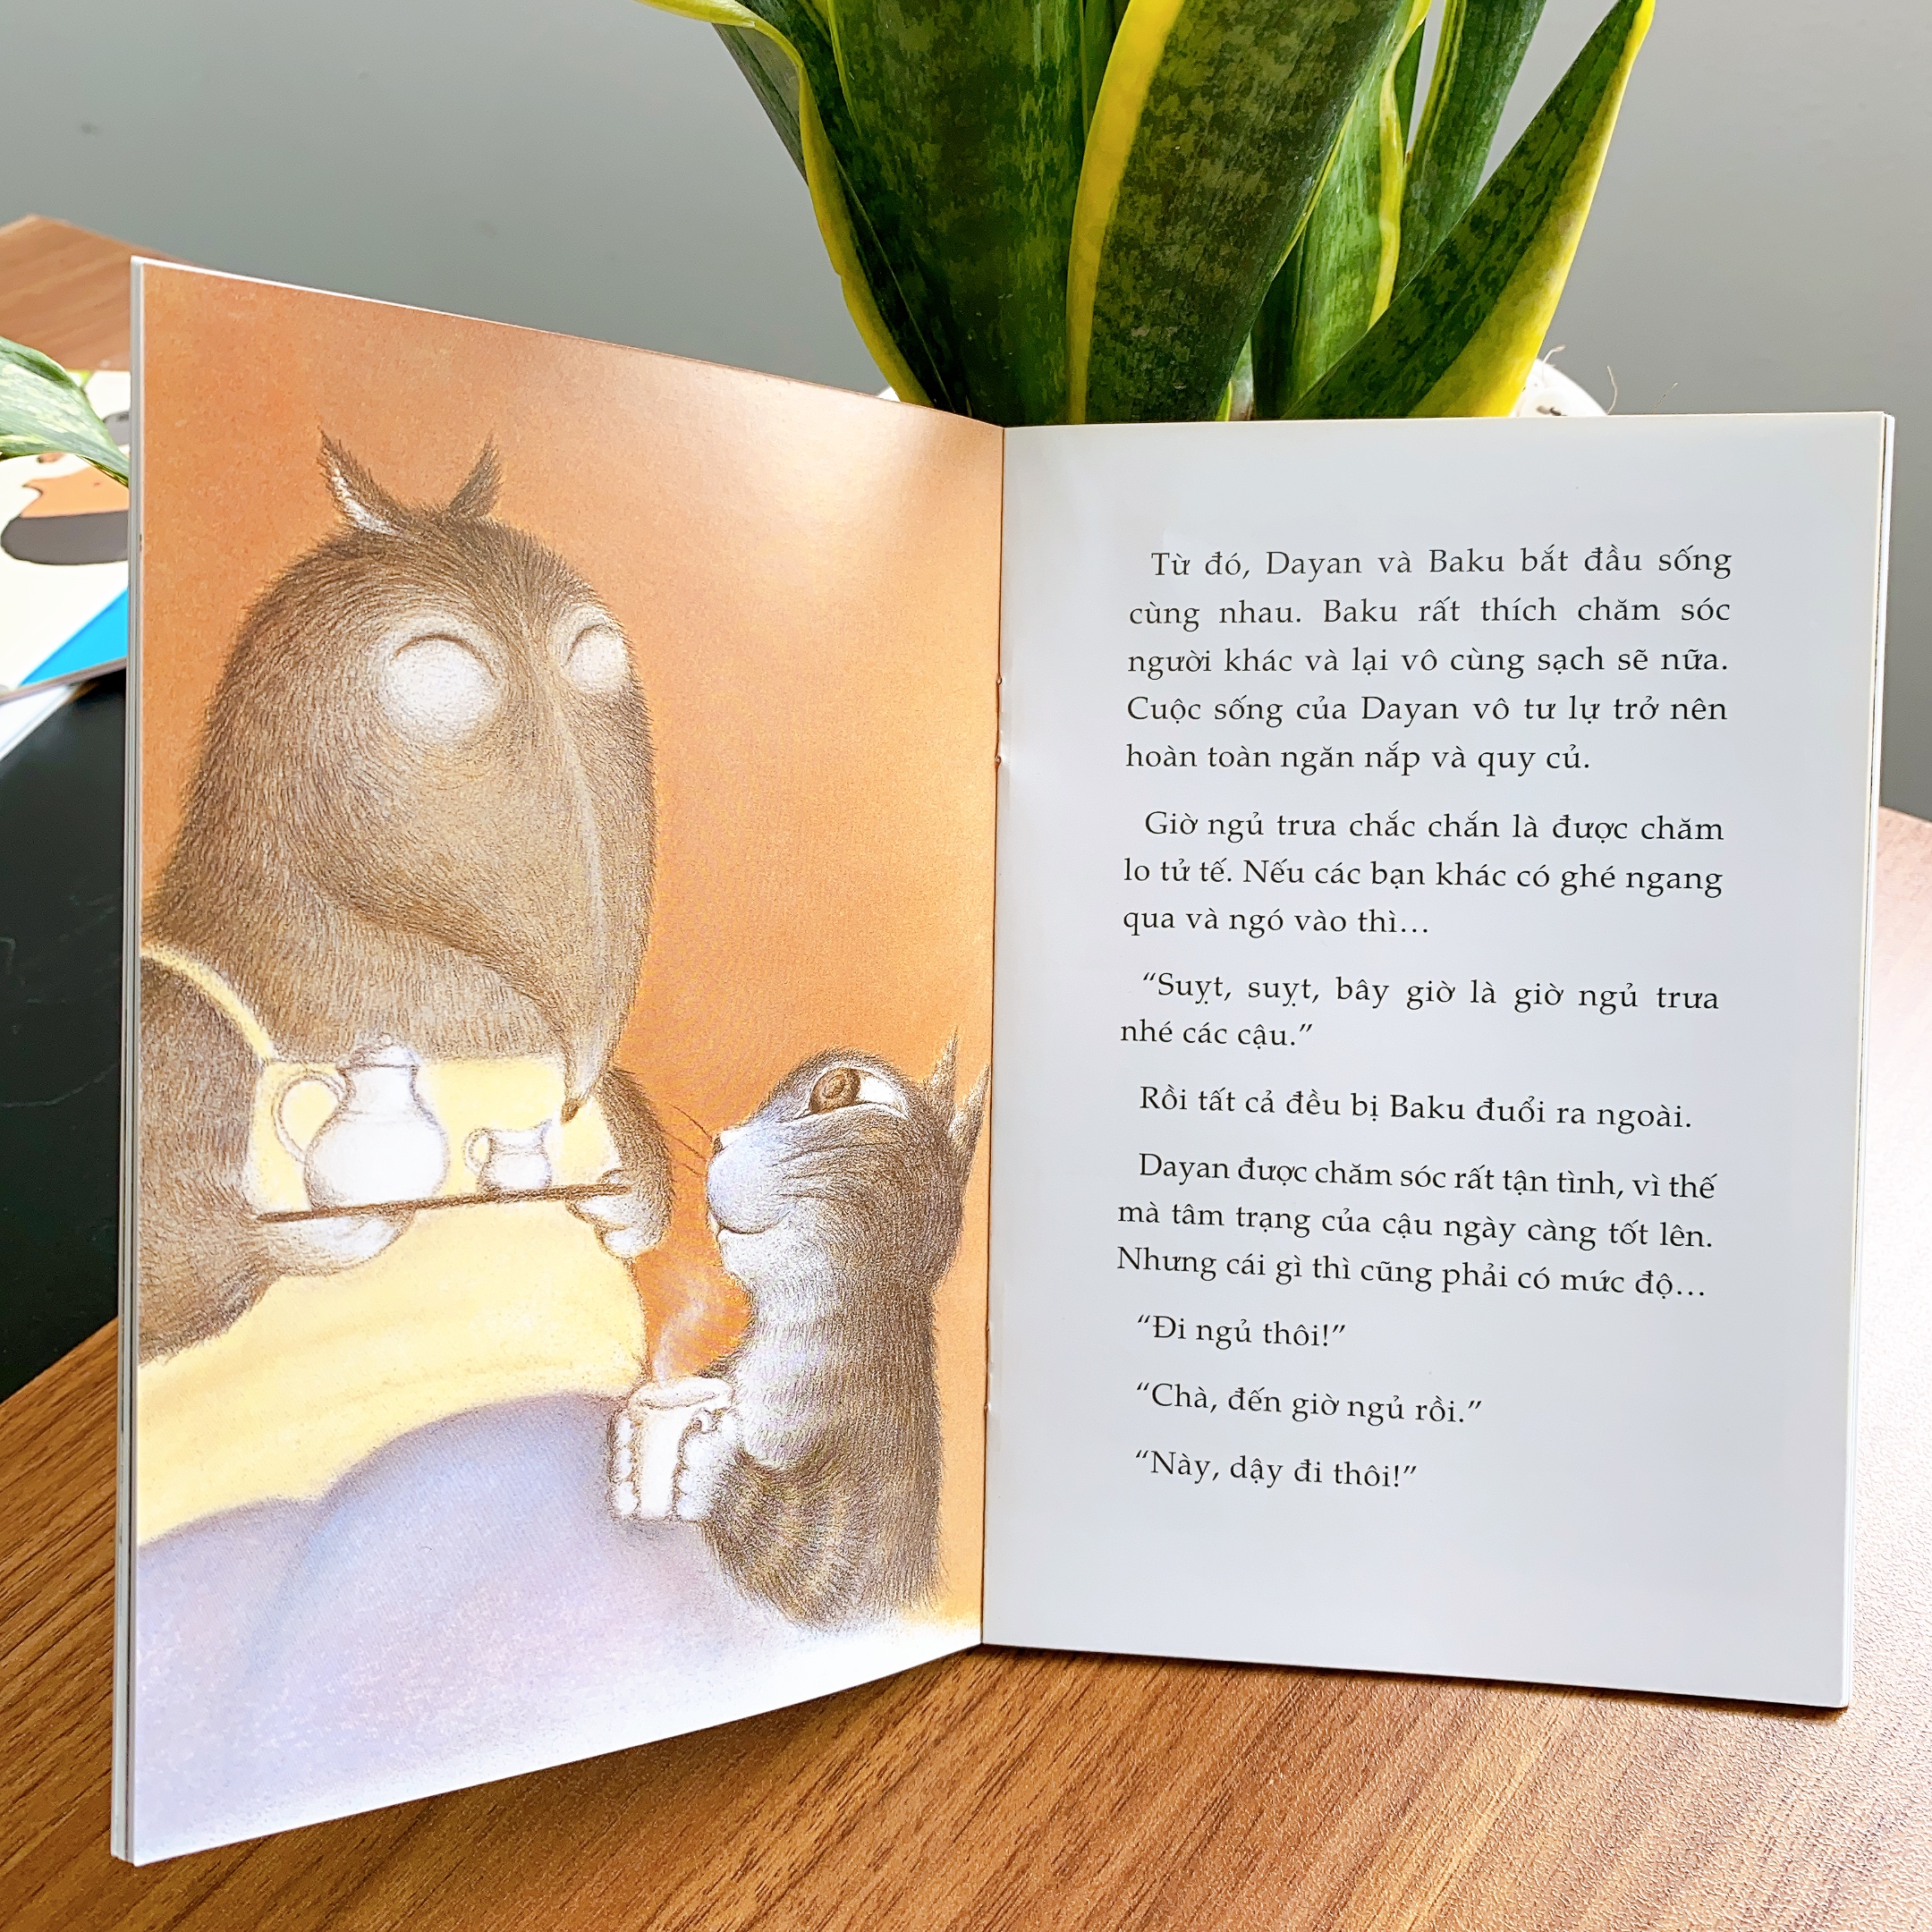 Sách cho trẻ từ 6 tuổi - Bộ Dayan 4 cuốn (Tranh truyện ehon Nhật Bản cho bé)